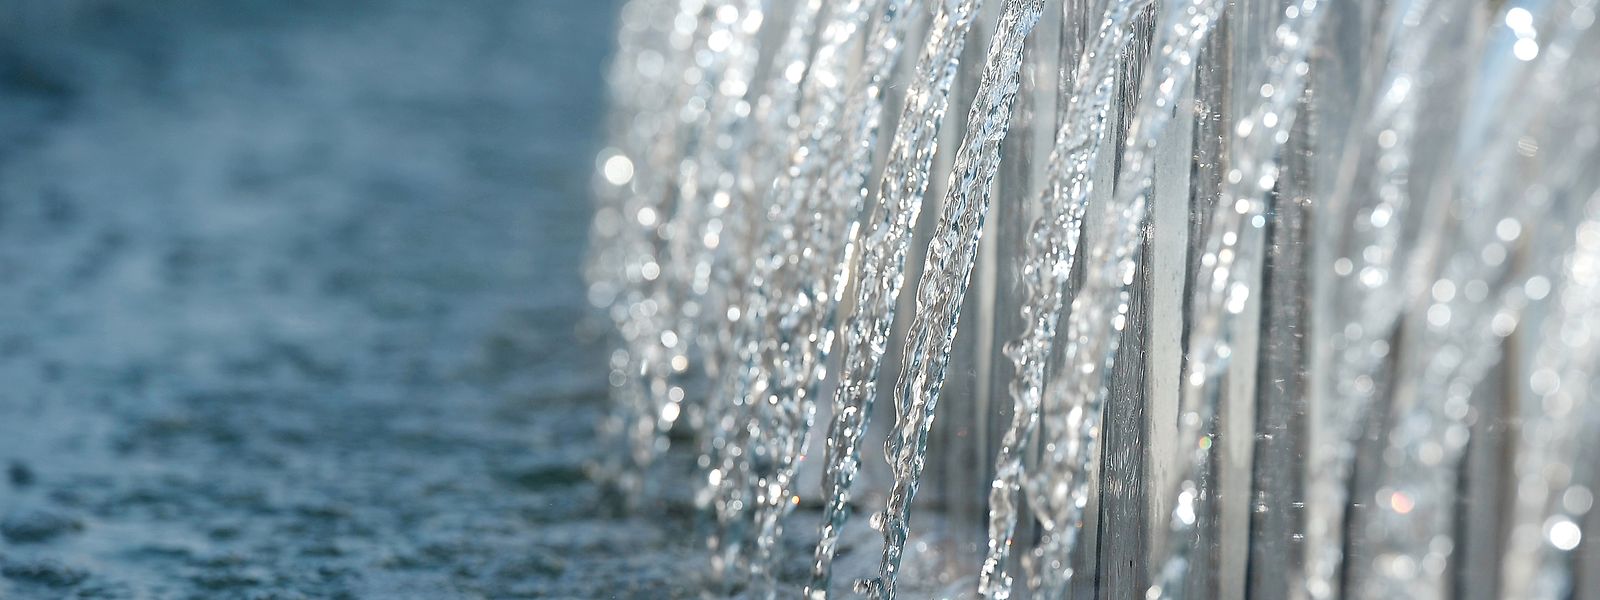 Installée à Esch-sur-Alzette, une équipe du LIST parvient à montrer que la surveillance des eaux usées est «un système de pré-alerte efficace de la résurgence du virus dans la population».